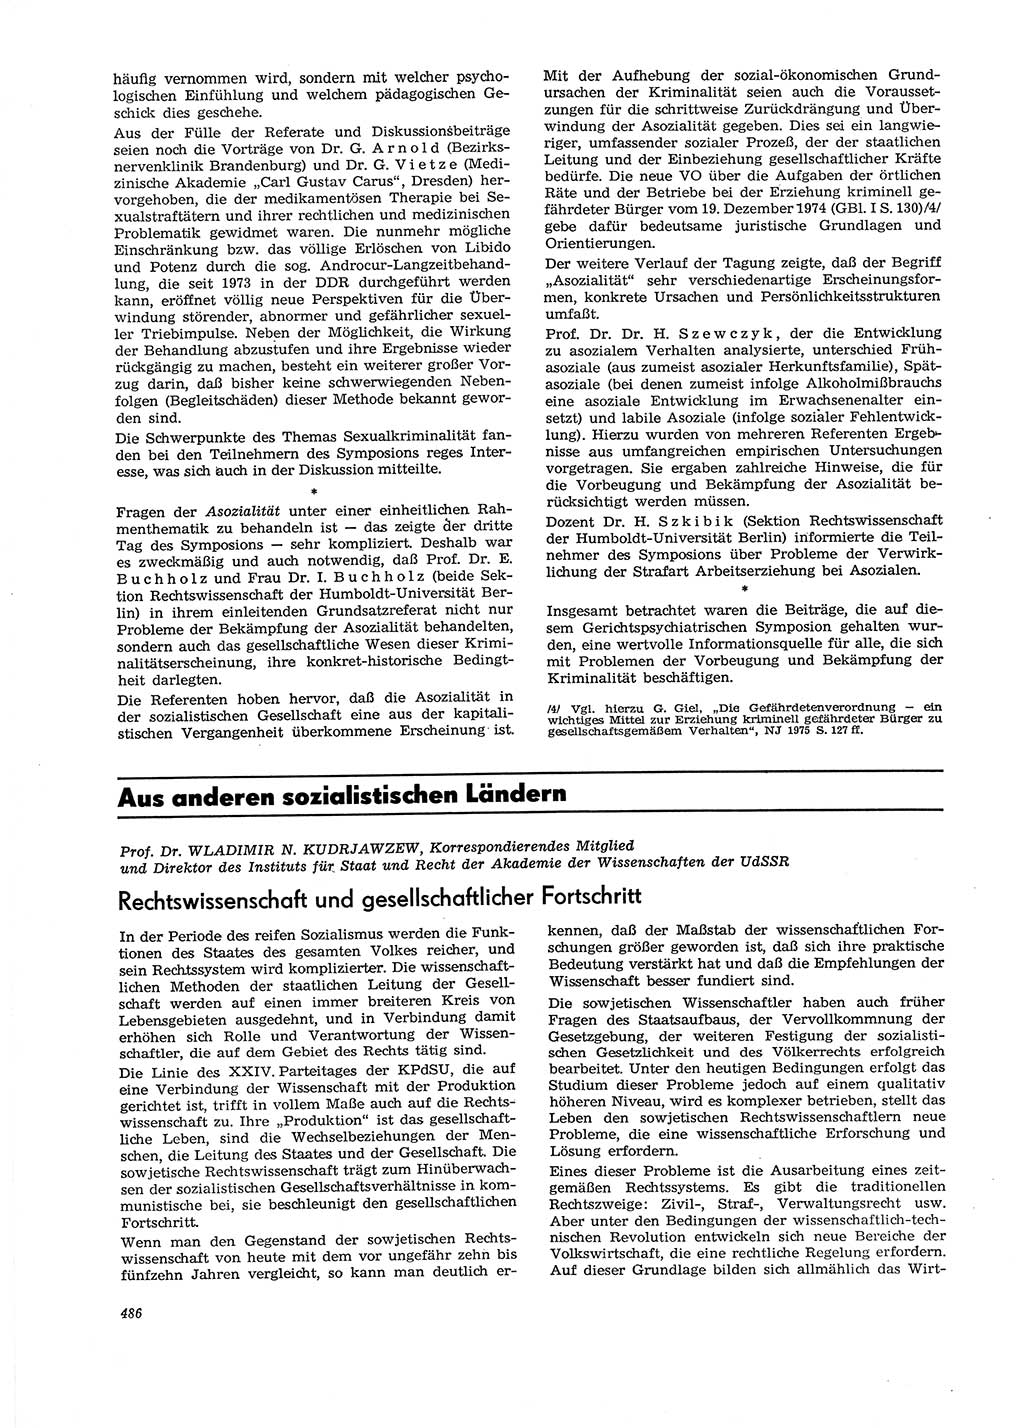 Neue Justiz (NJ), Zeitschrift für Recht und Rechtswissenschaft [Deutsche Demokratische Republik (DDR)], 29. Jahrgang 1975, Seite 486 (NJ DDR 1975, S. 486)